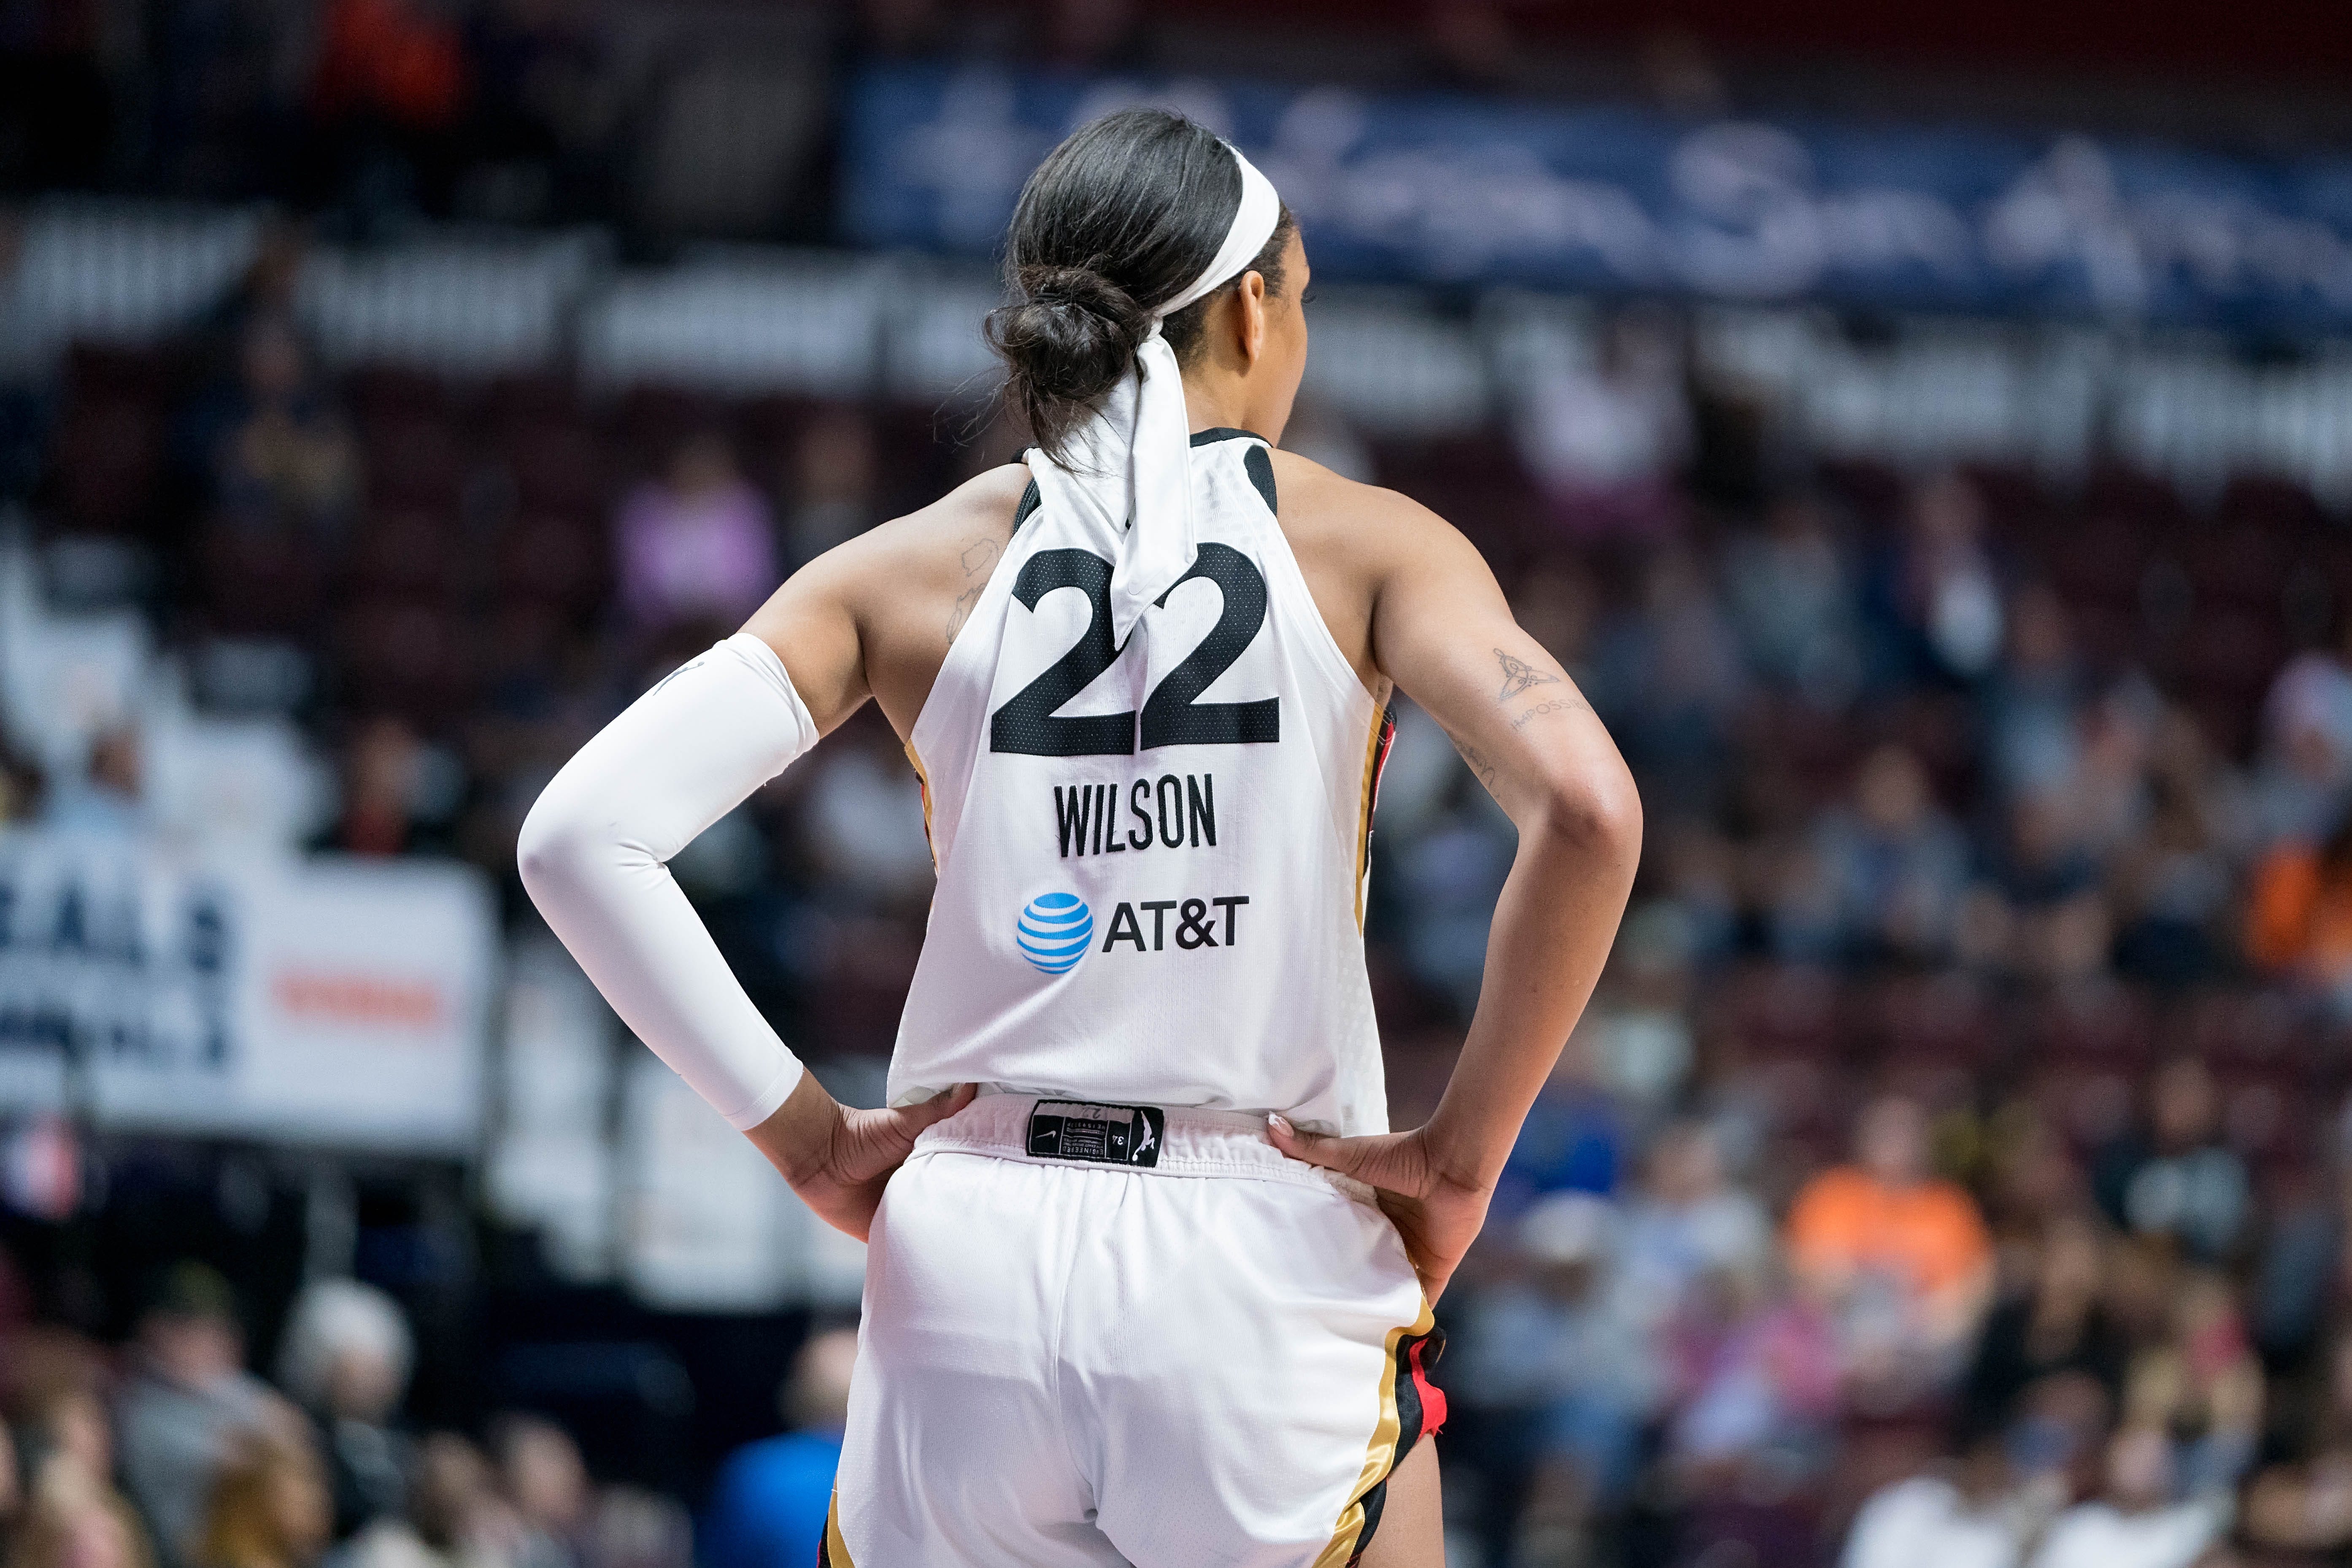 2023 WNBA season preview: Las Vegas Aces - The Next